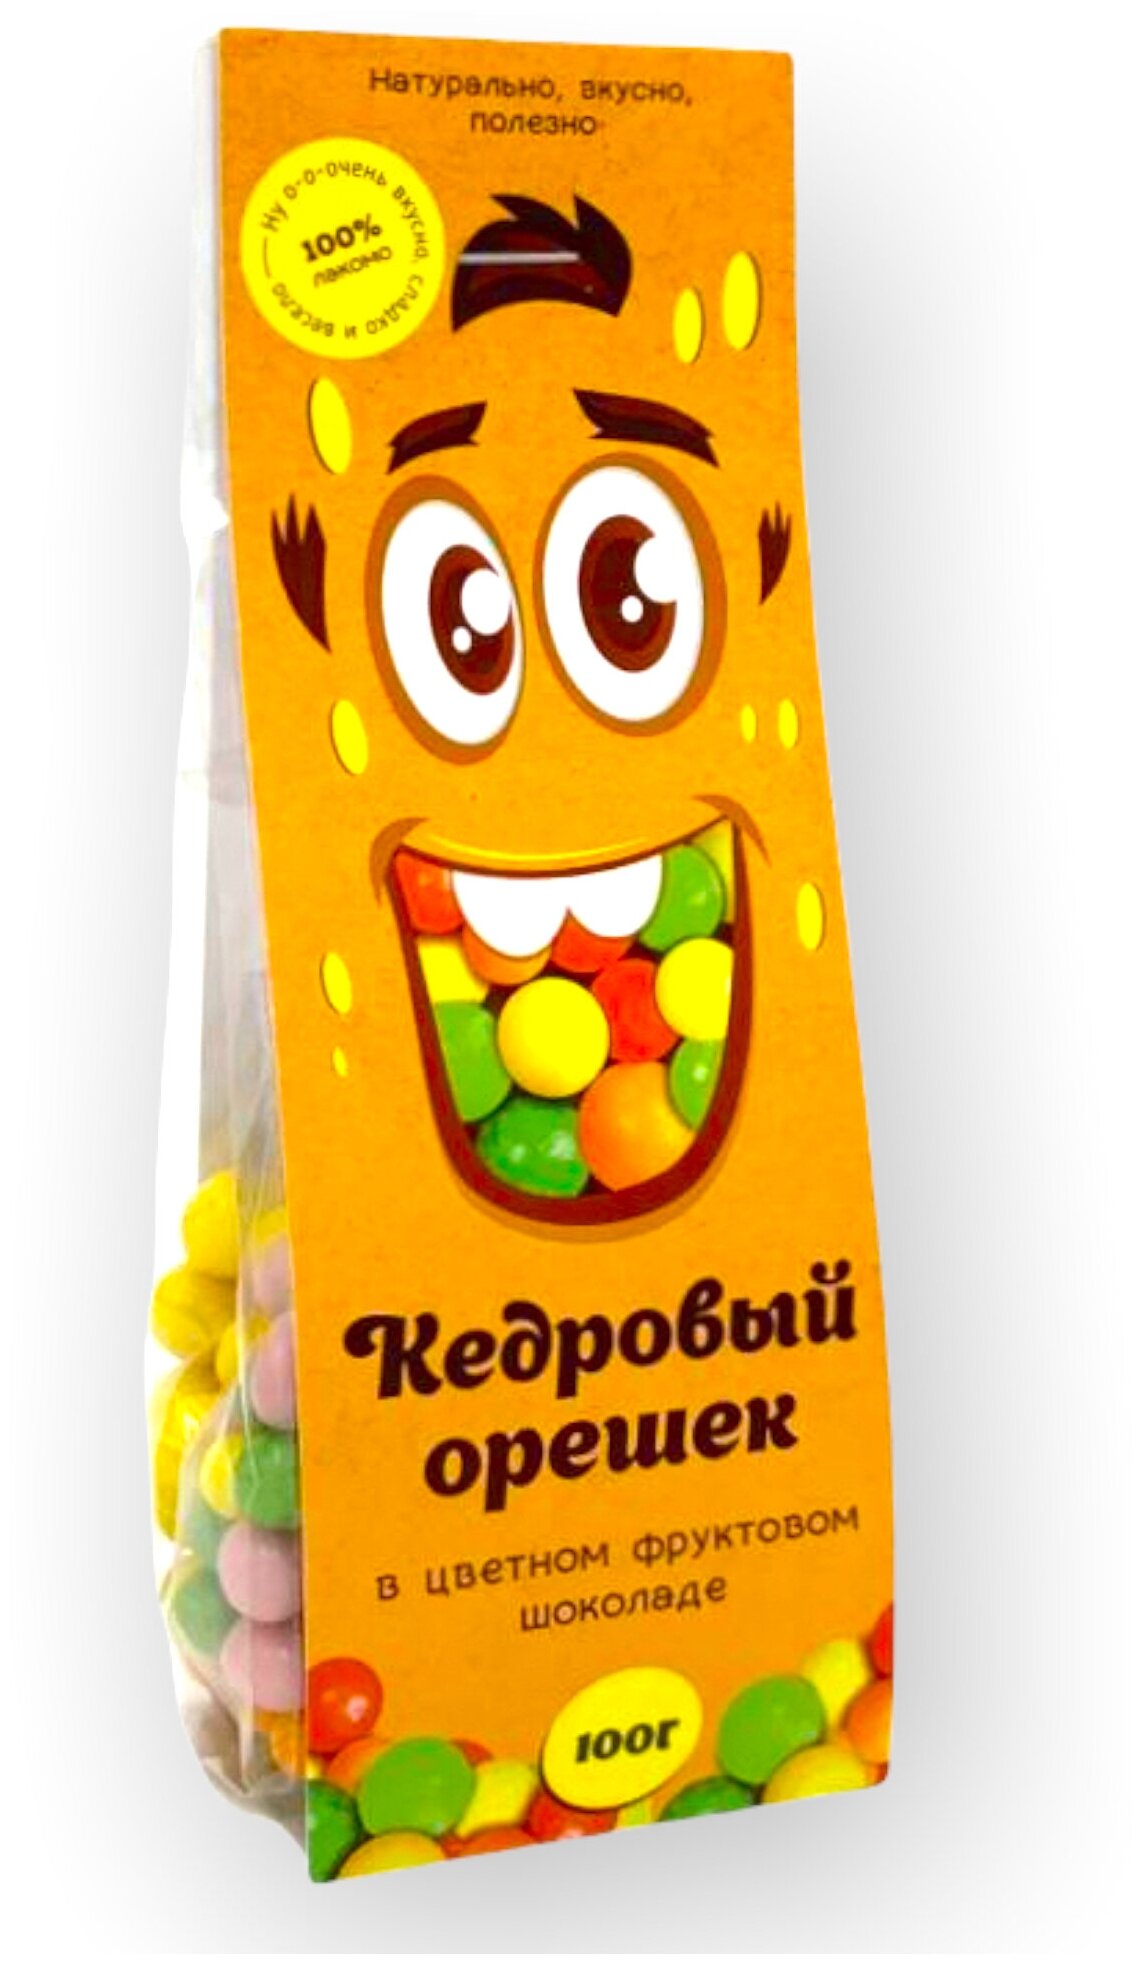 Солнечная Сибирь Кедровое драже в Цветном фруктовом шоколаде 100 г